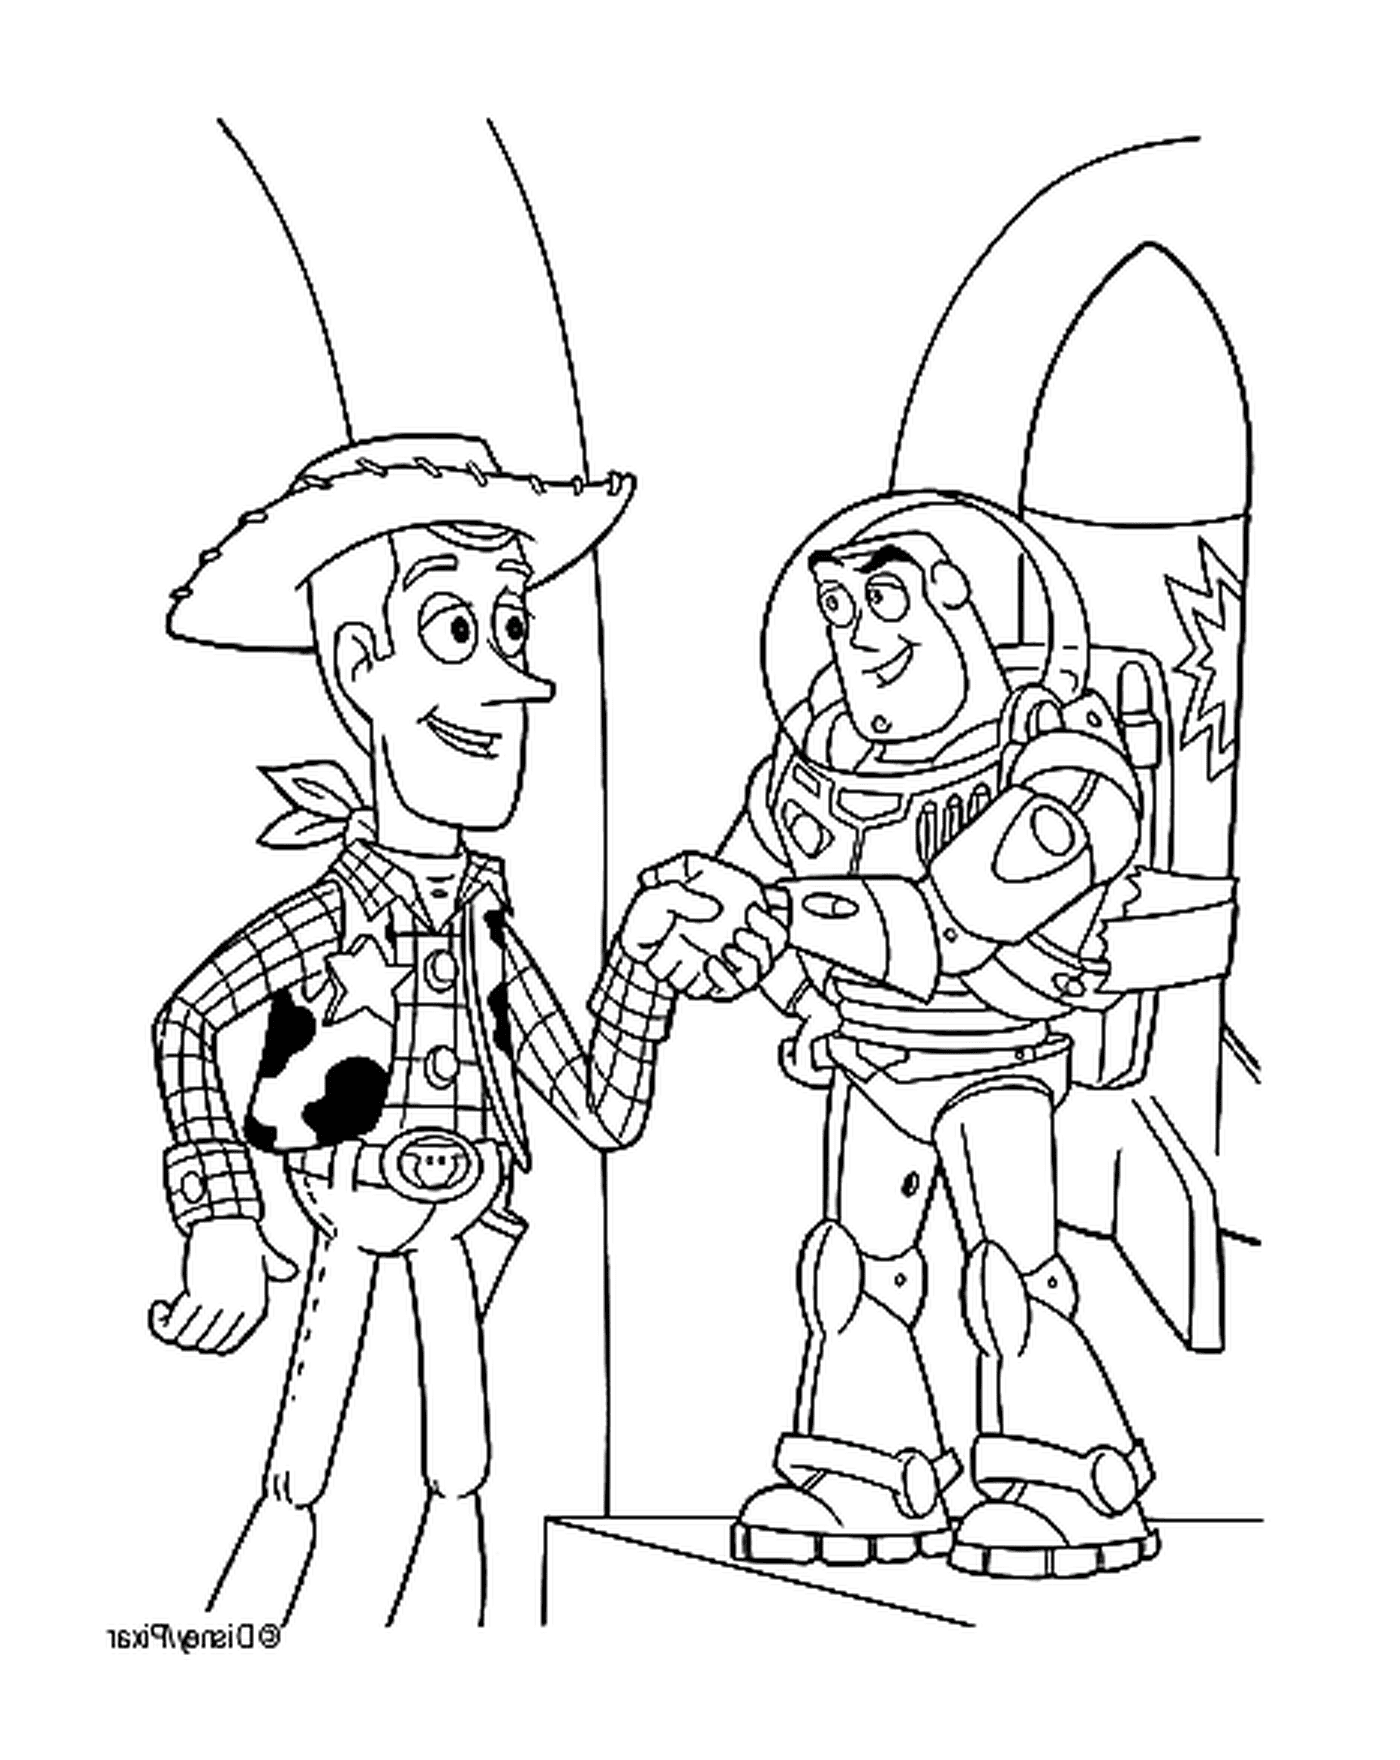  Buzz l'Éclair y Woody, socios legendarios 